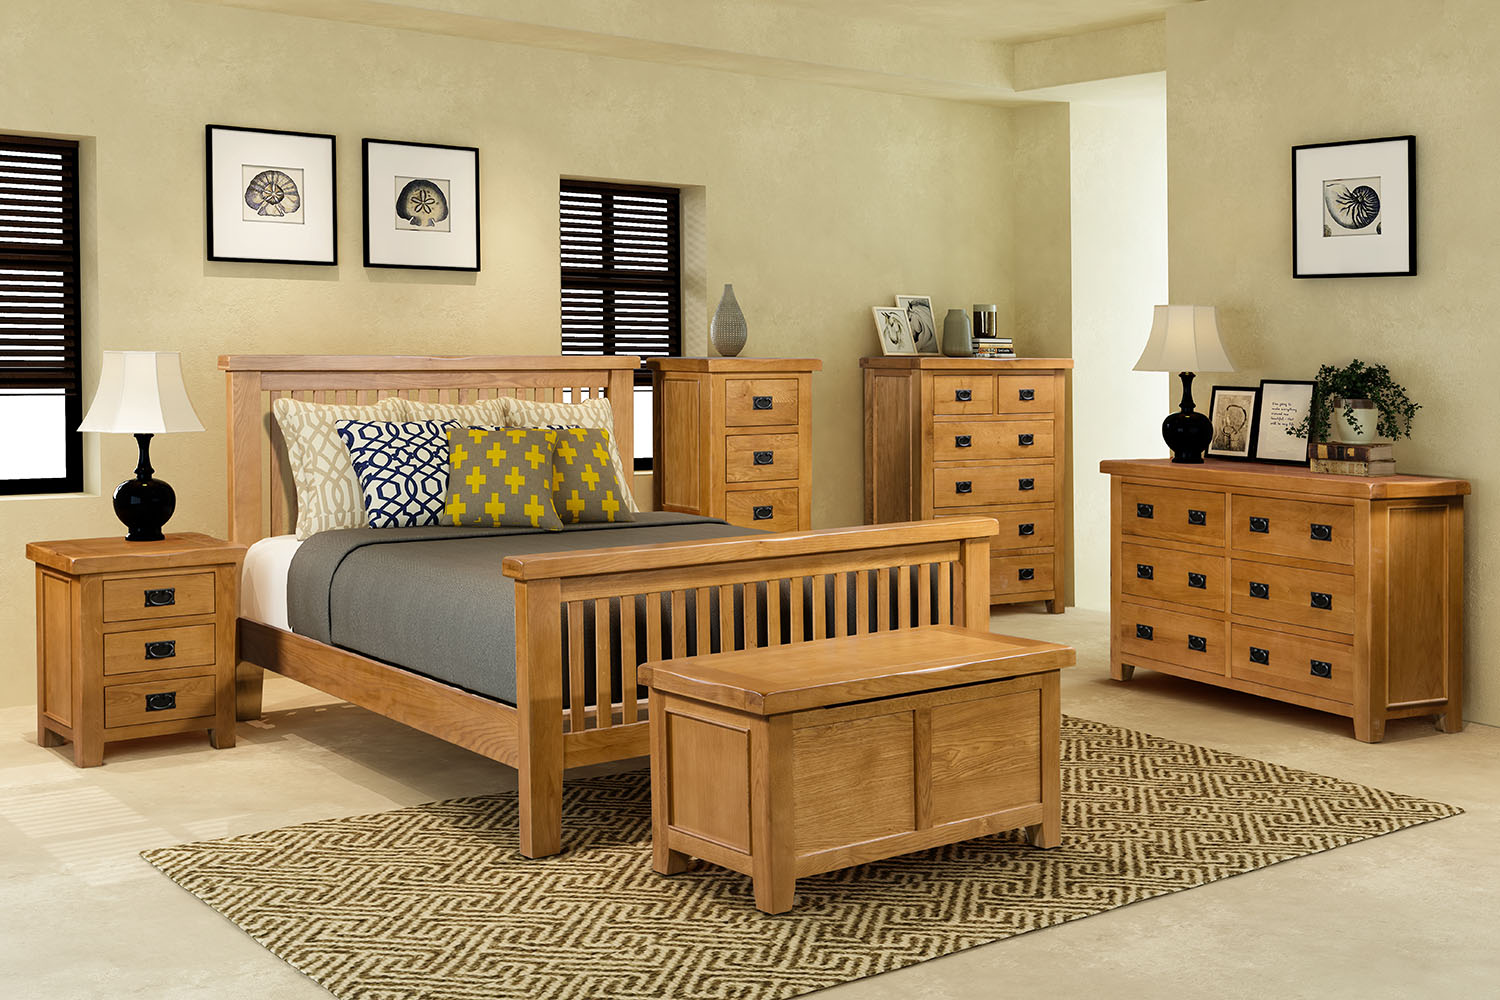 oak bedroom furniture plans